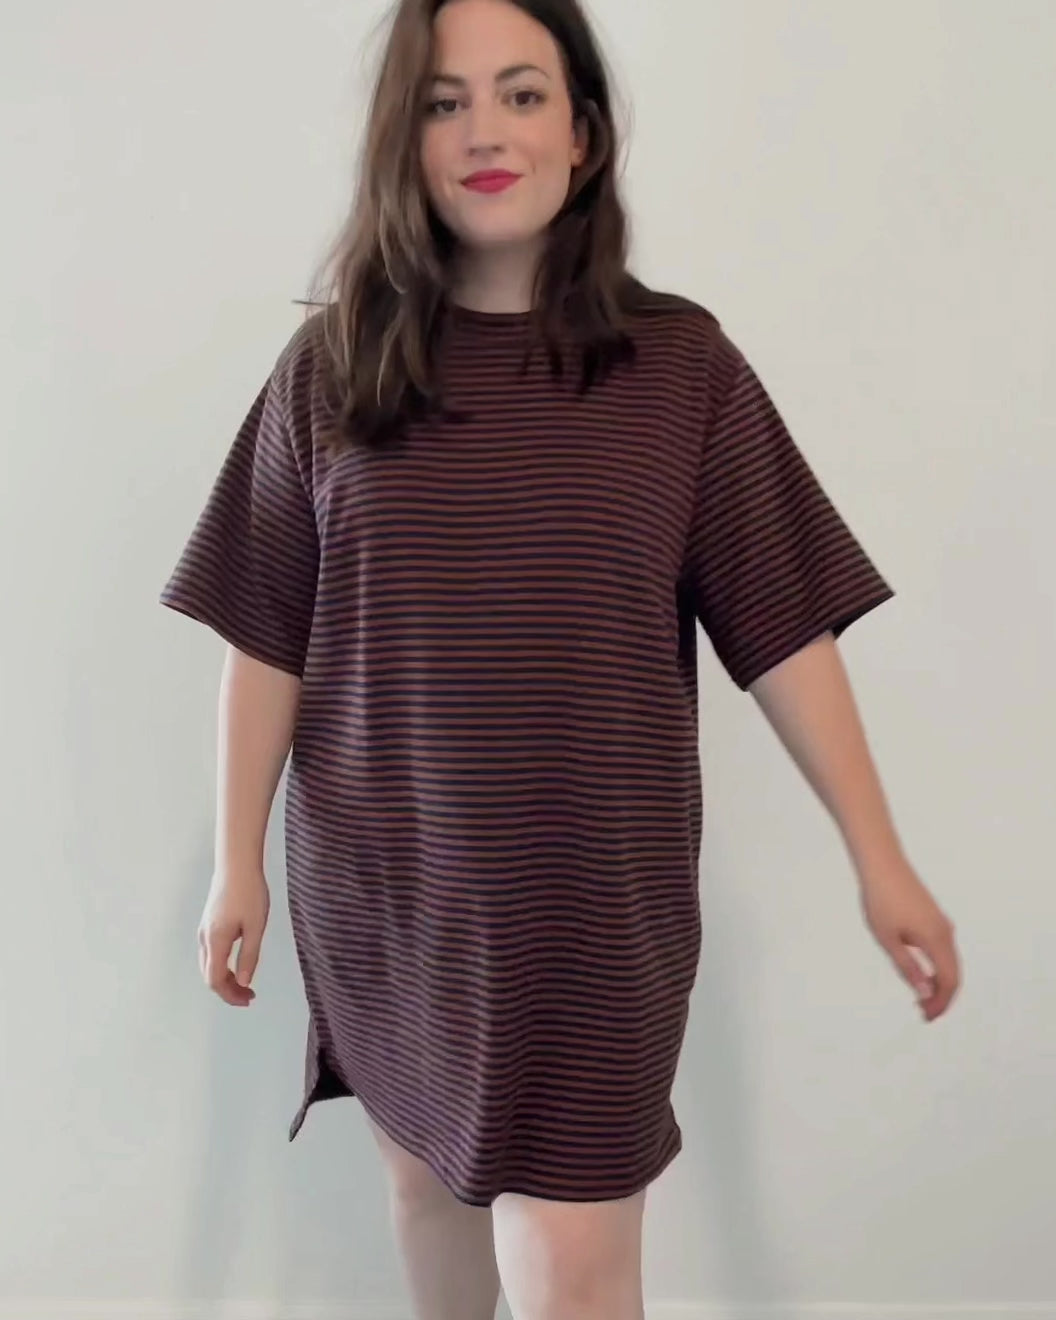 Striped T-Shirt Dress - Small